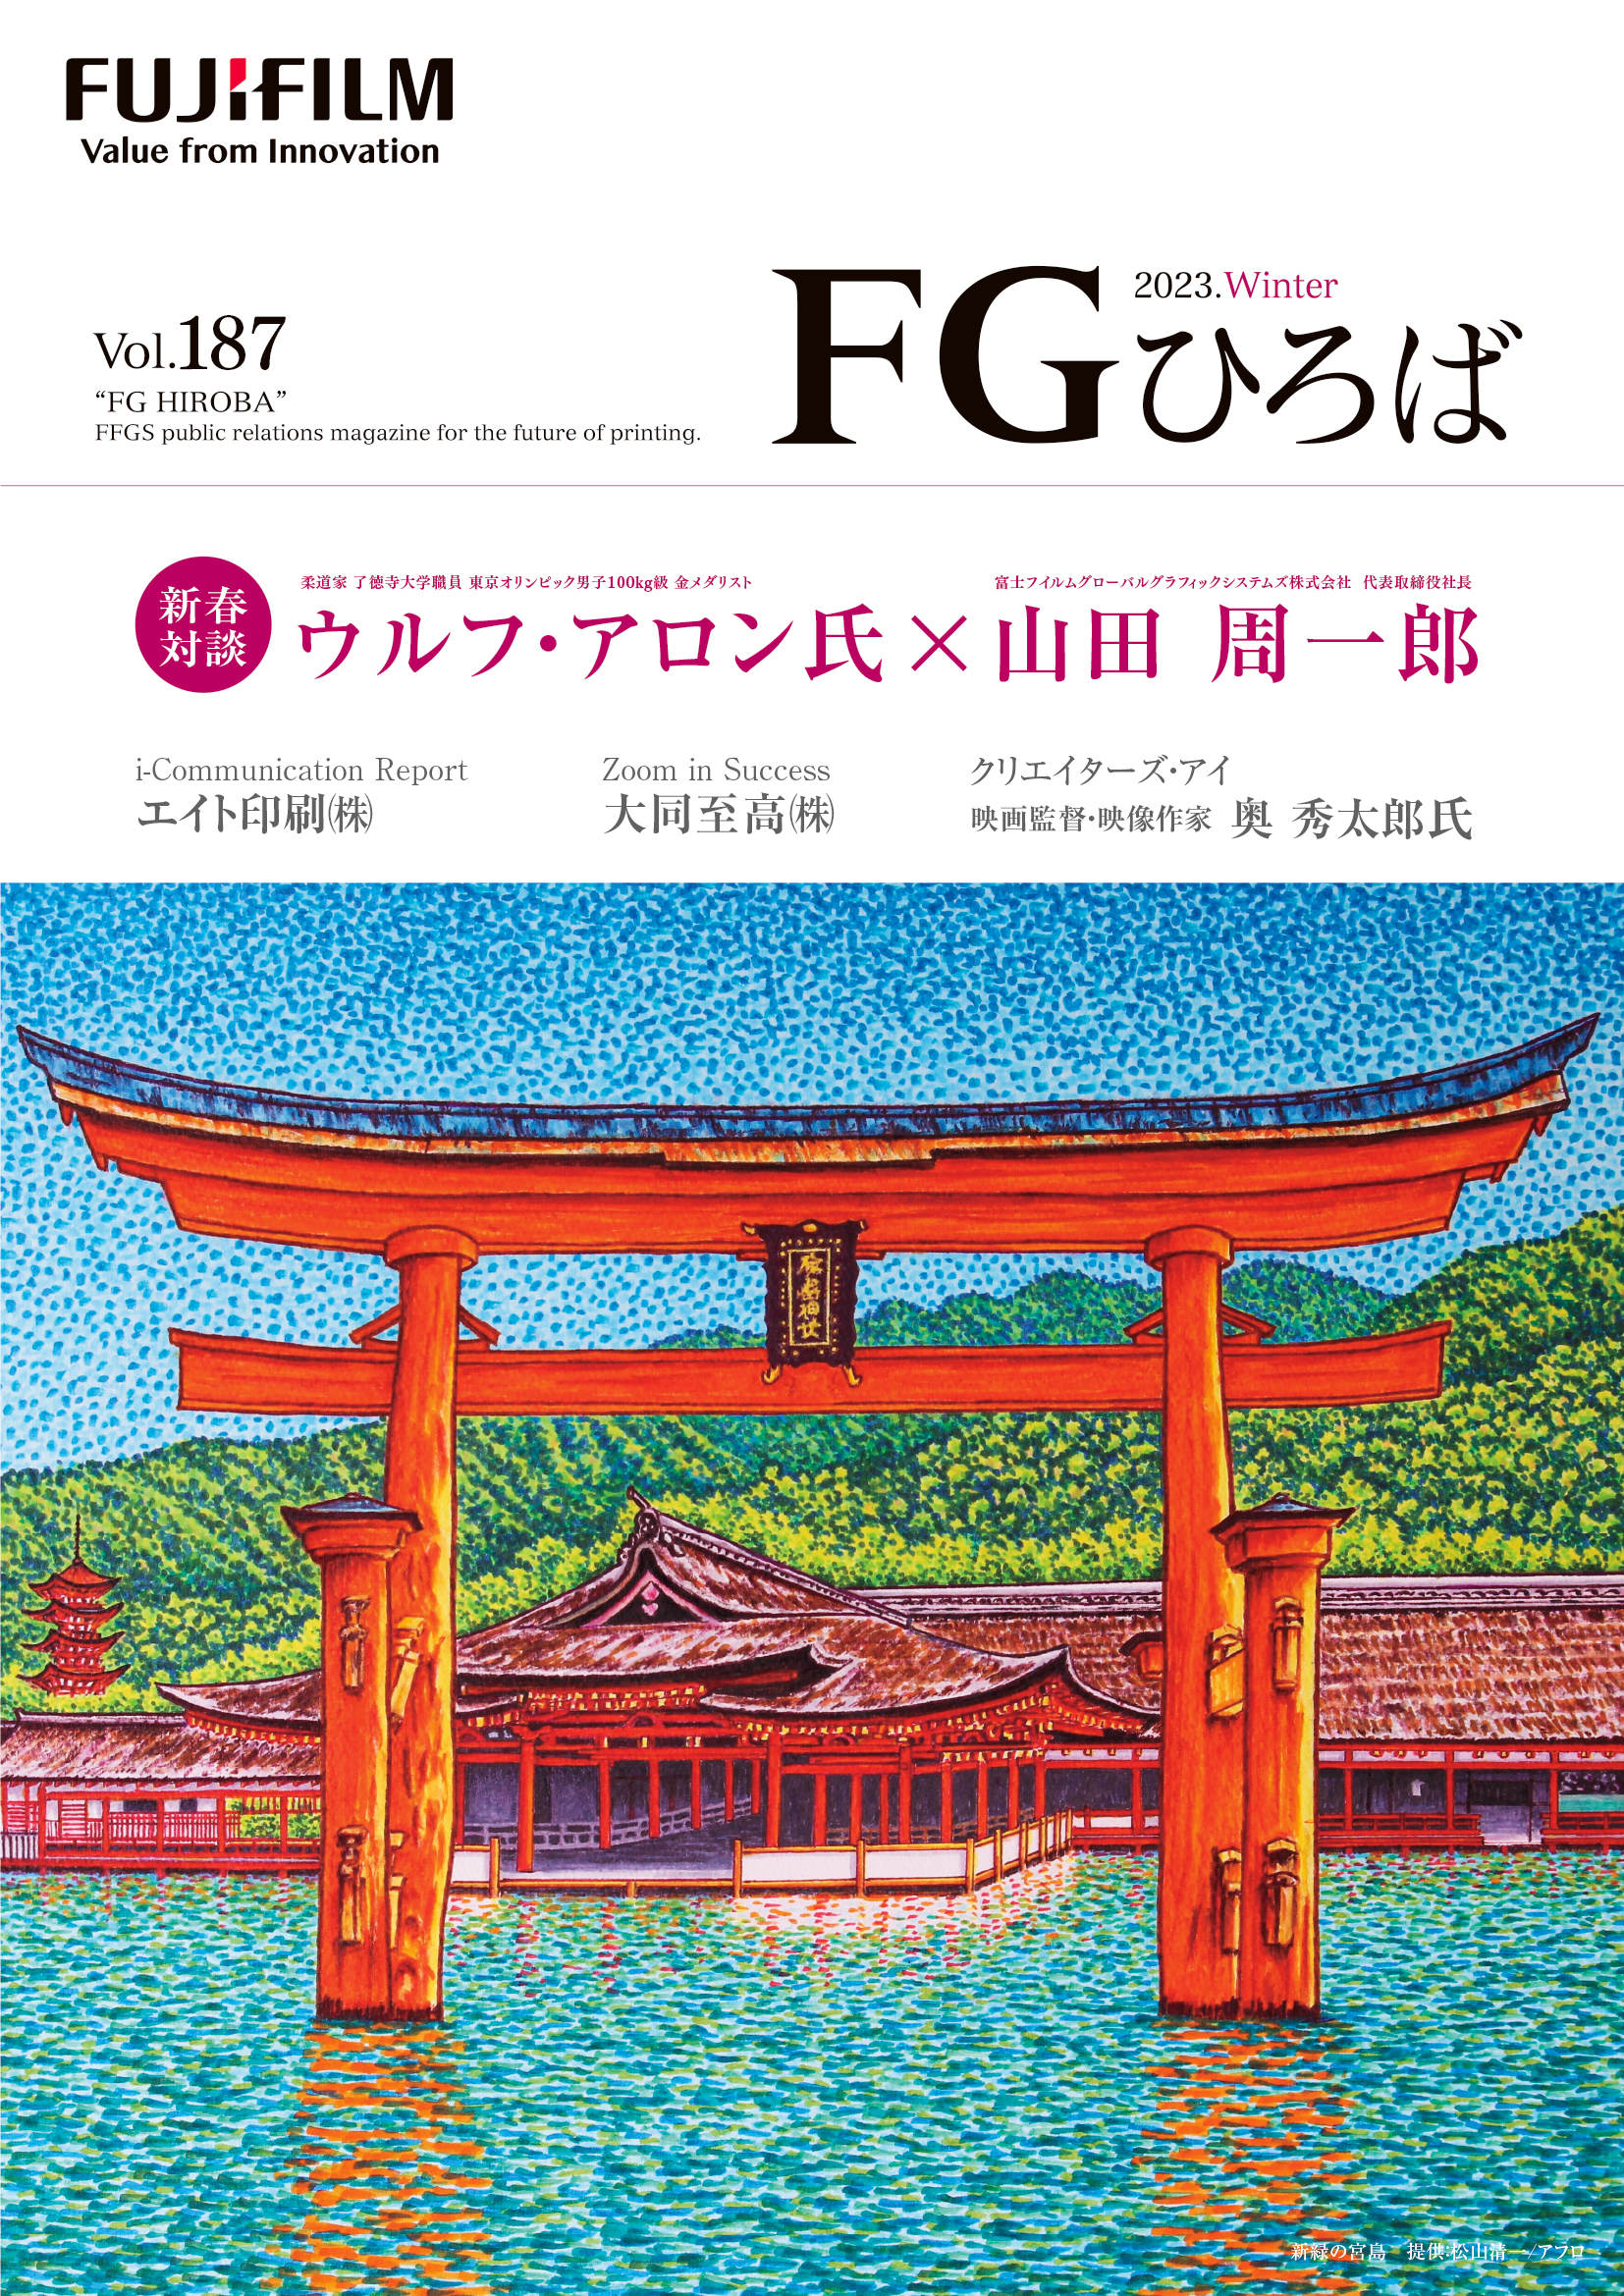 エイト印刷が掲載された「FGひとば」の表紙